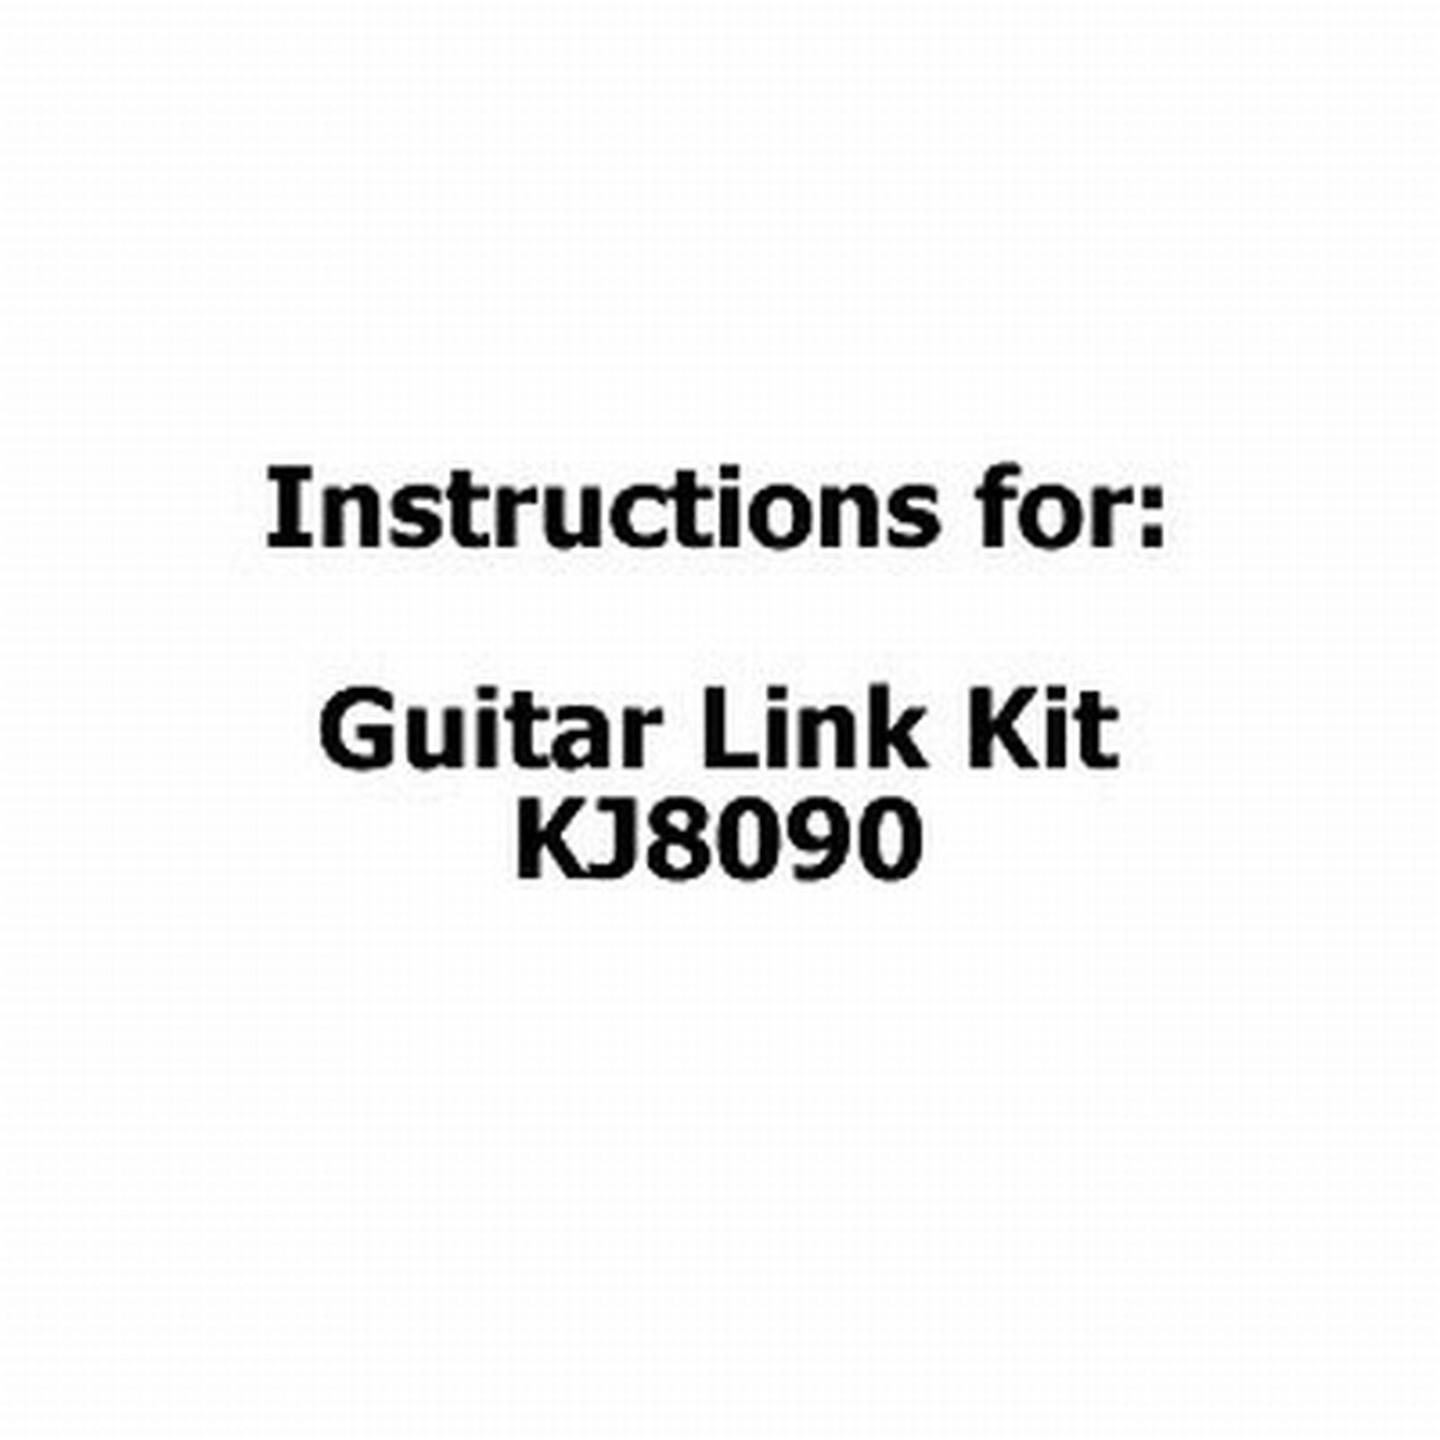 Instructions for Guitar Link Kit KJ8090